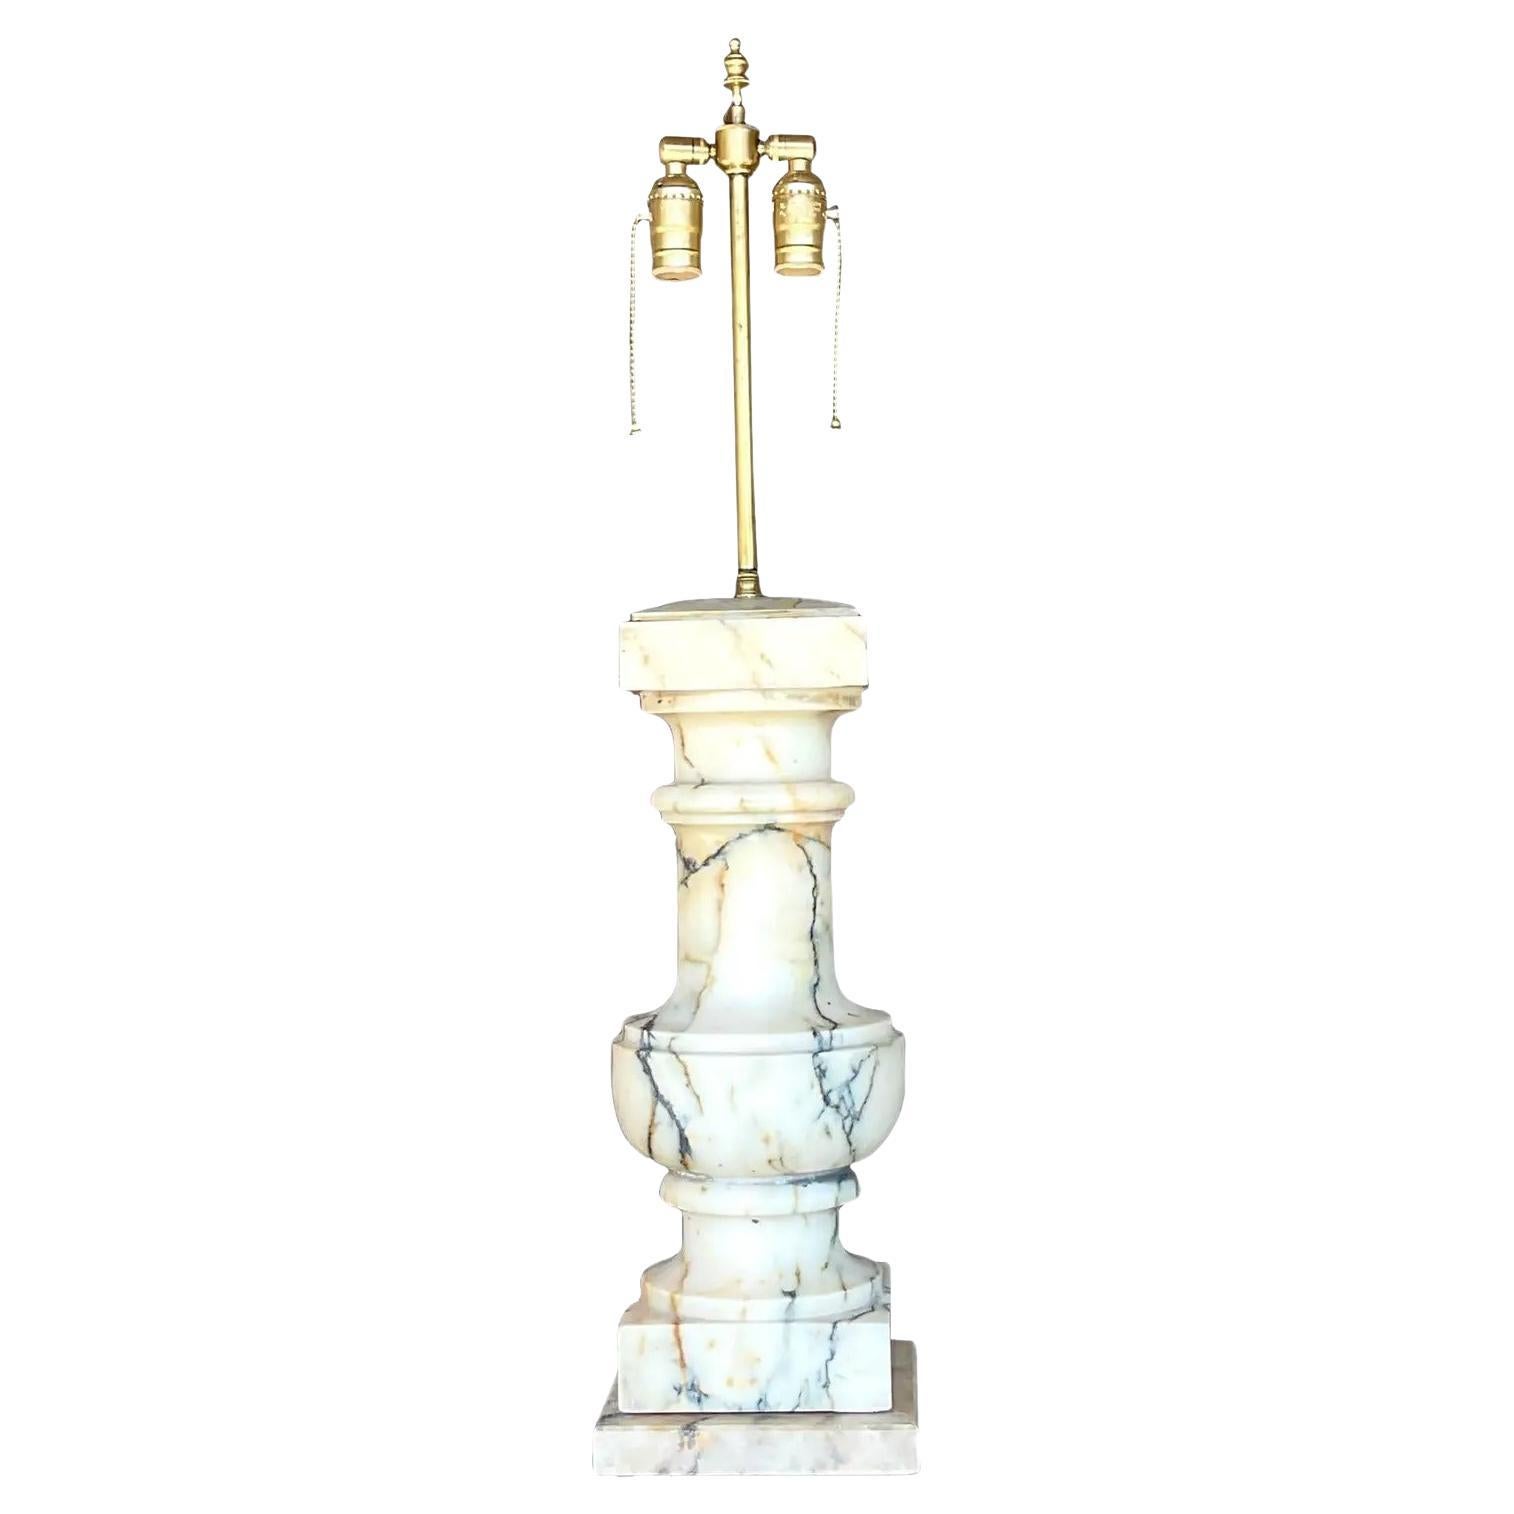 Lampe balustrade en marbre massif de style Régence vintage